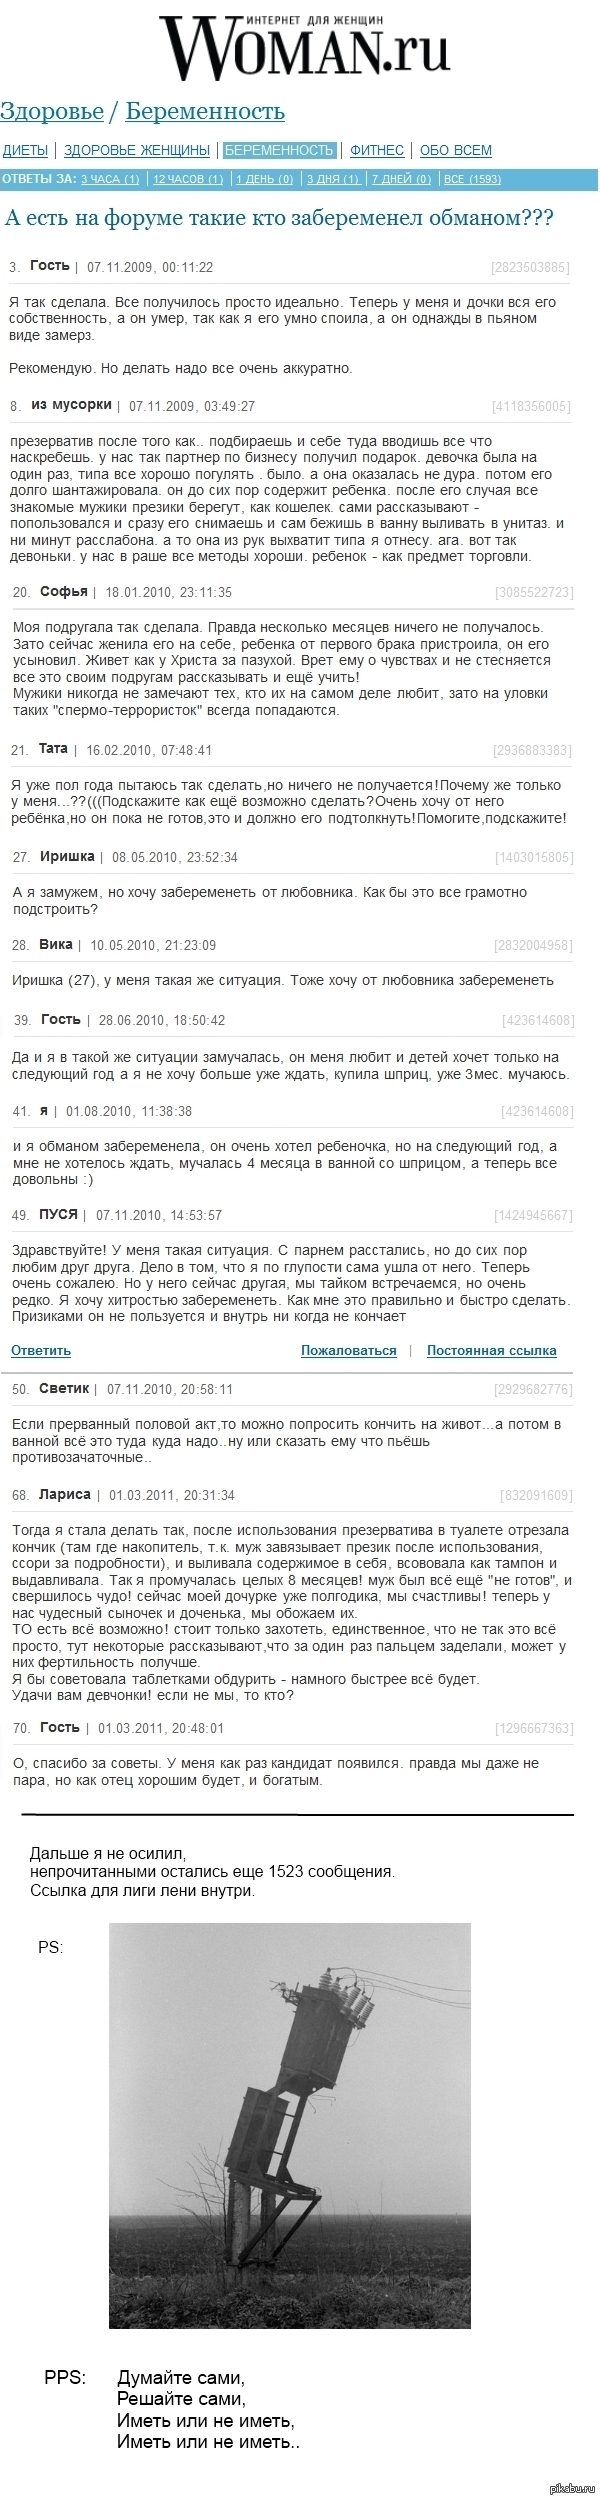 Форум Woman.ru